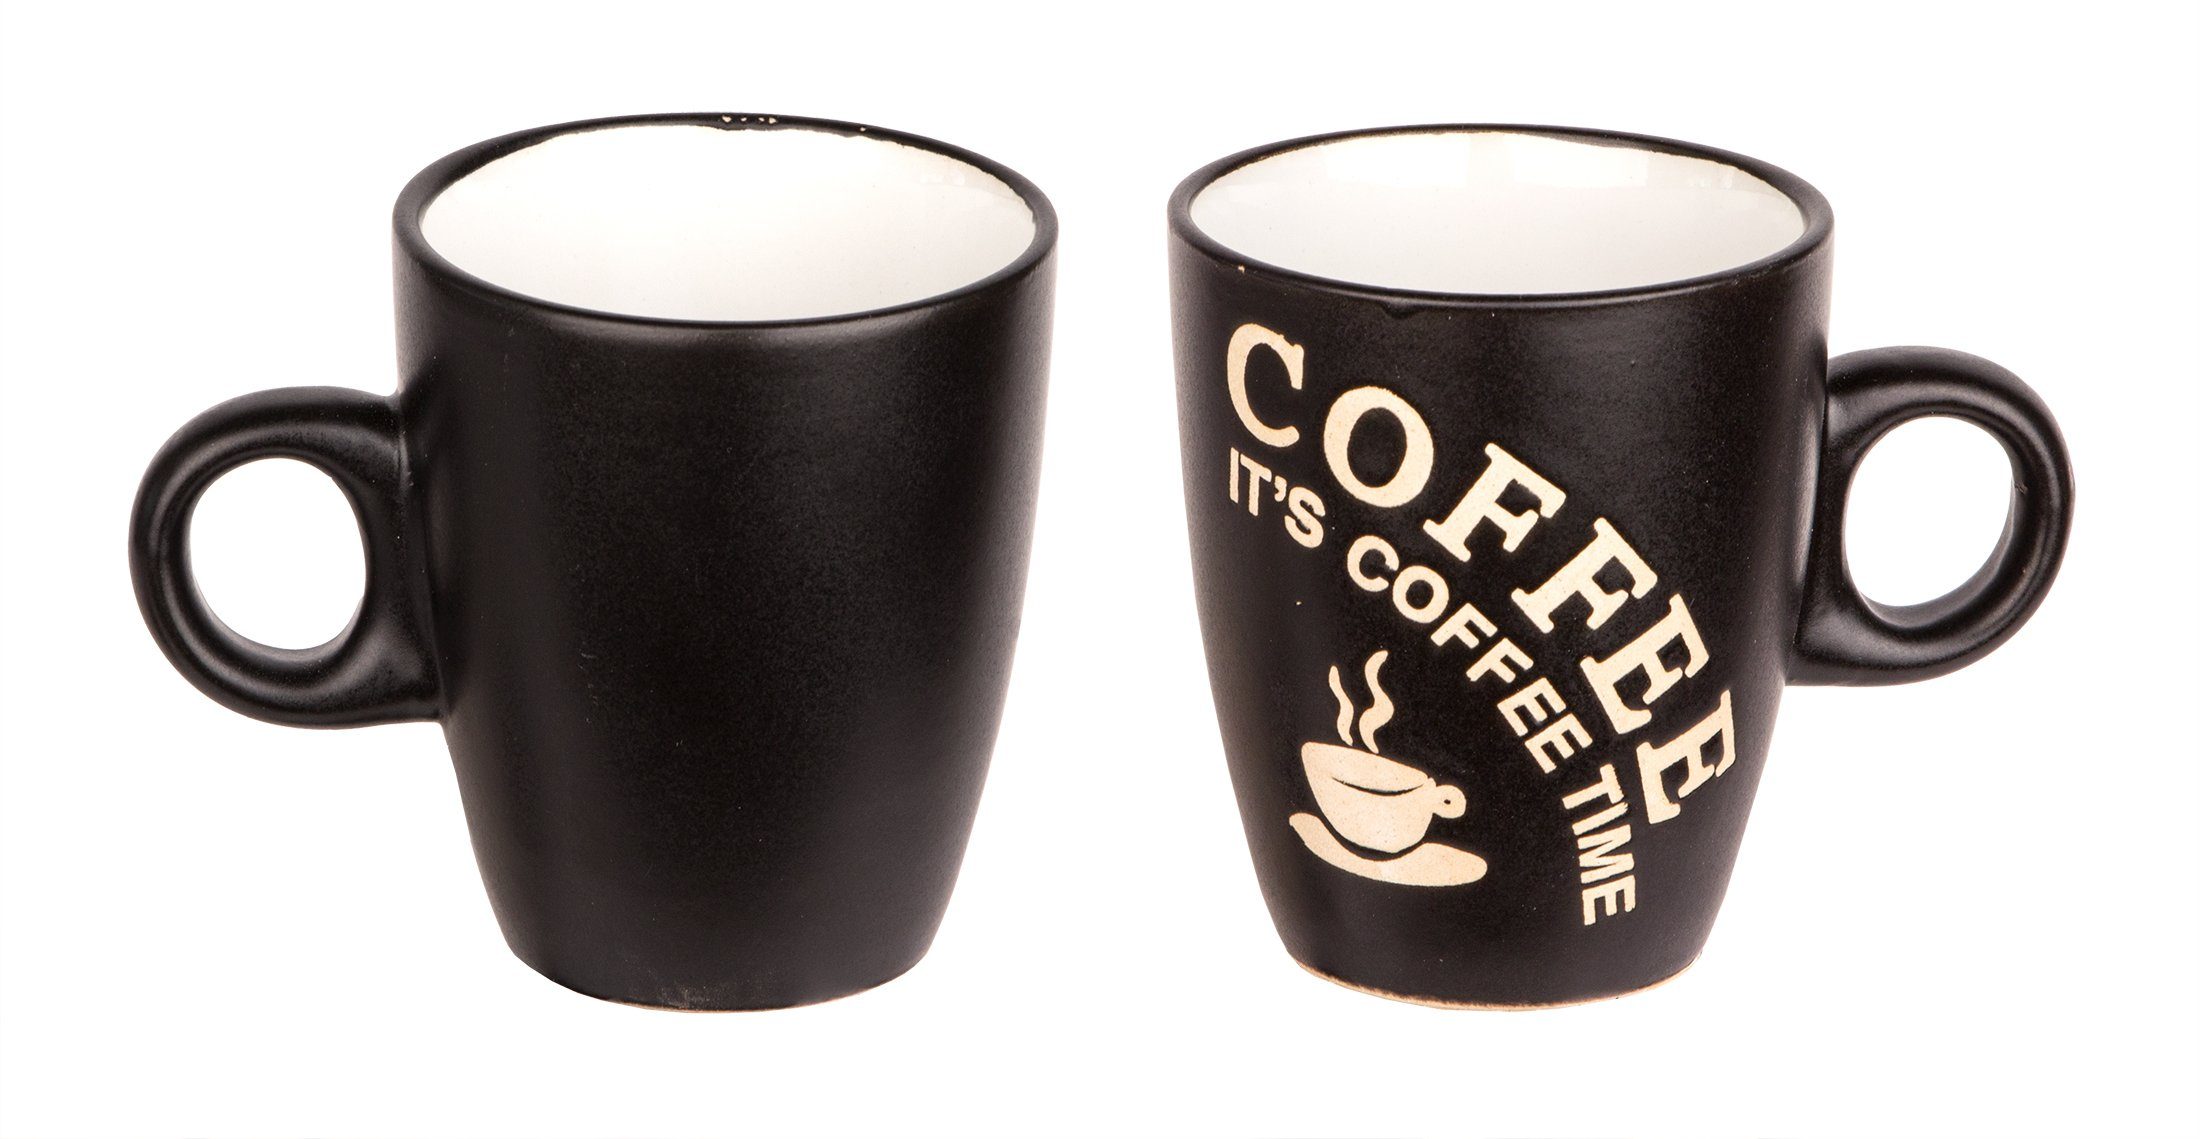 6er Tasse mit 3 Henkel Keramik Kaffeetassen Kaffeebecher BigDean Set Farben, 180ml